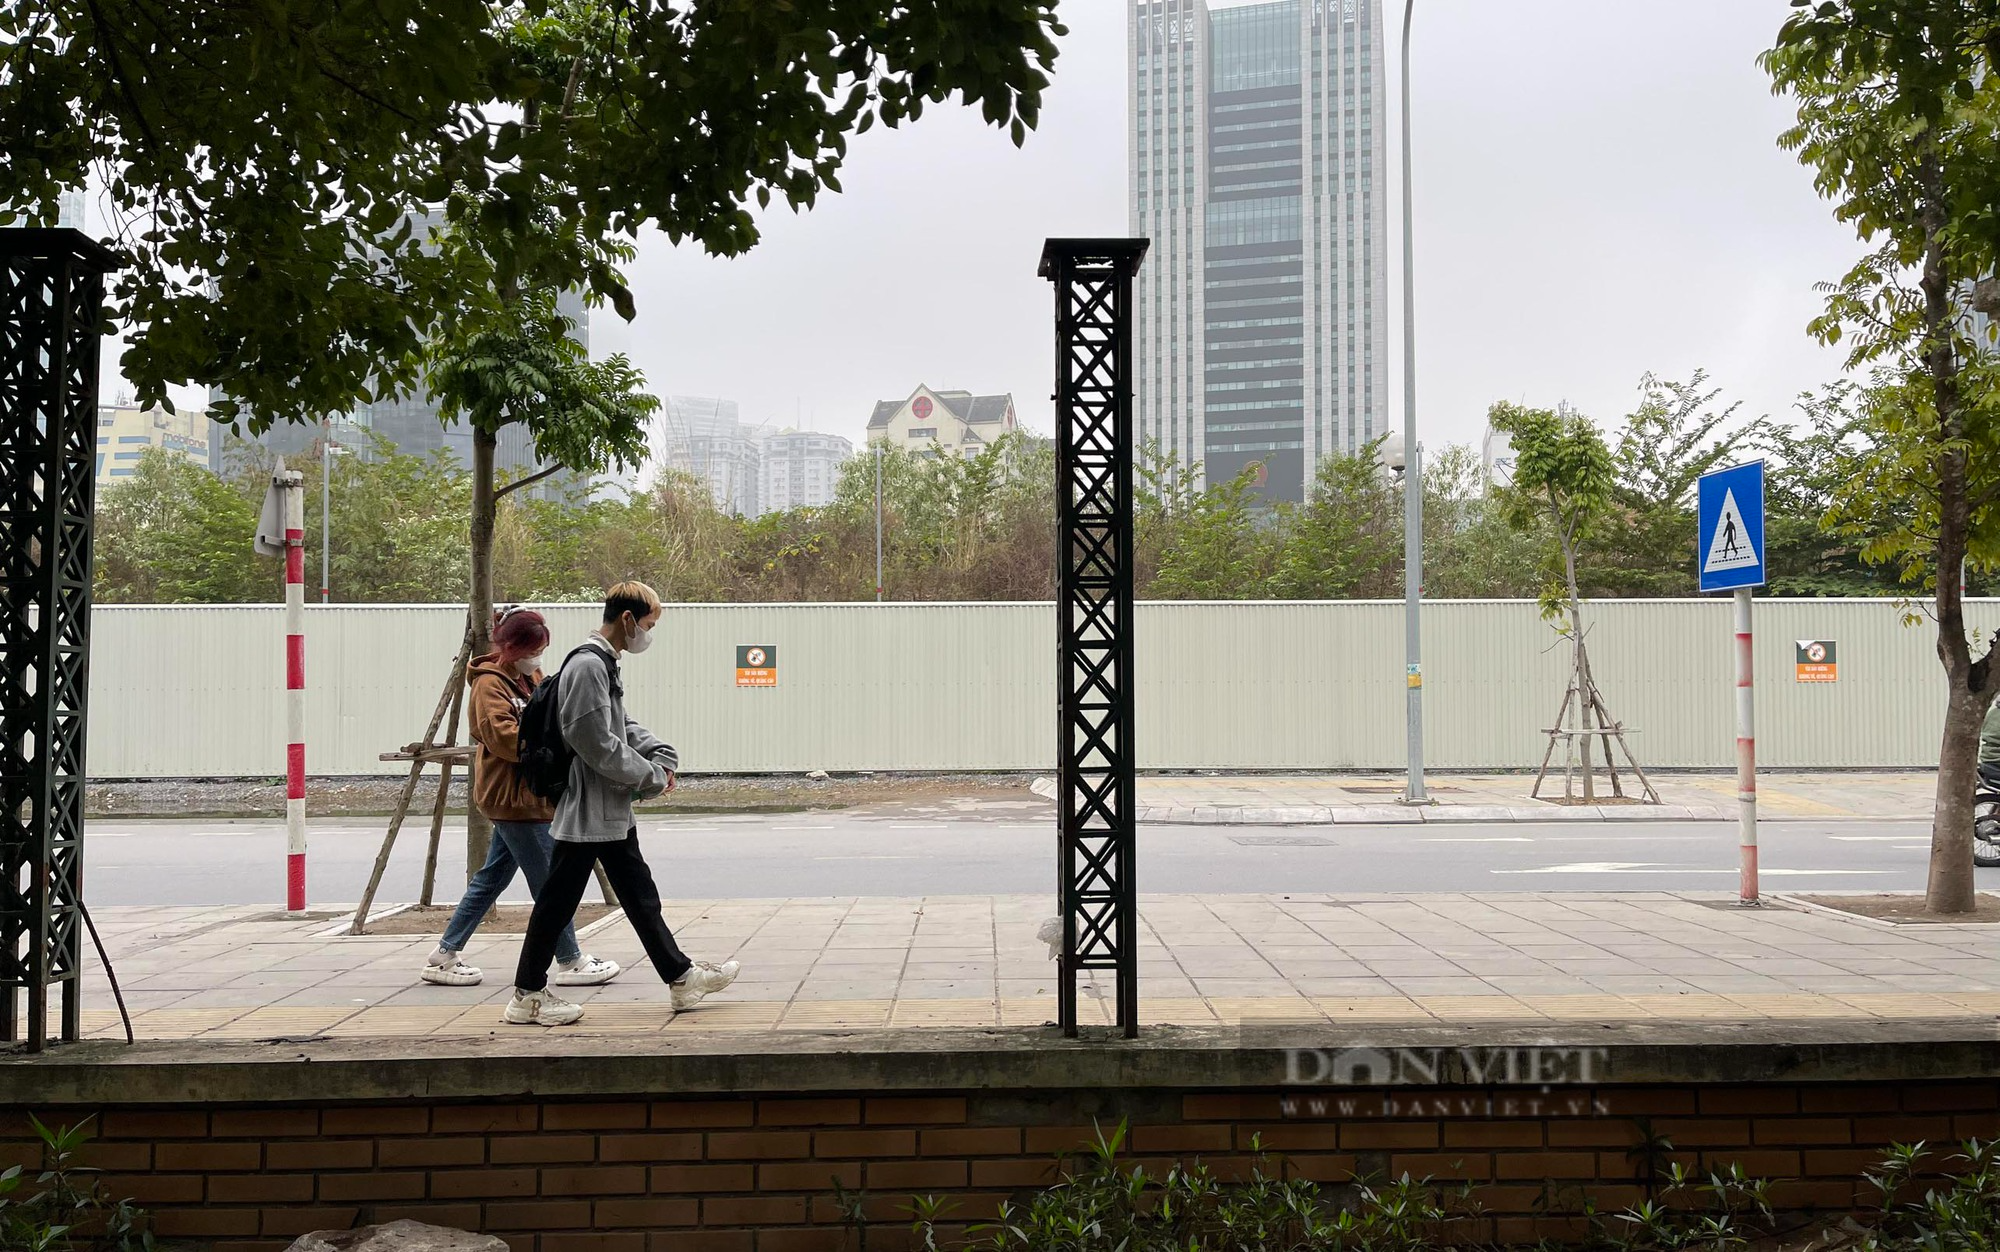 Cận cảnh công viên lớn ở Hà Nội được đề nghị tháo rào sắt phục vụ dân miễn phí - Ảnh 3.